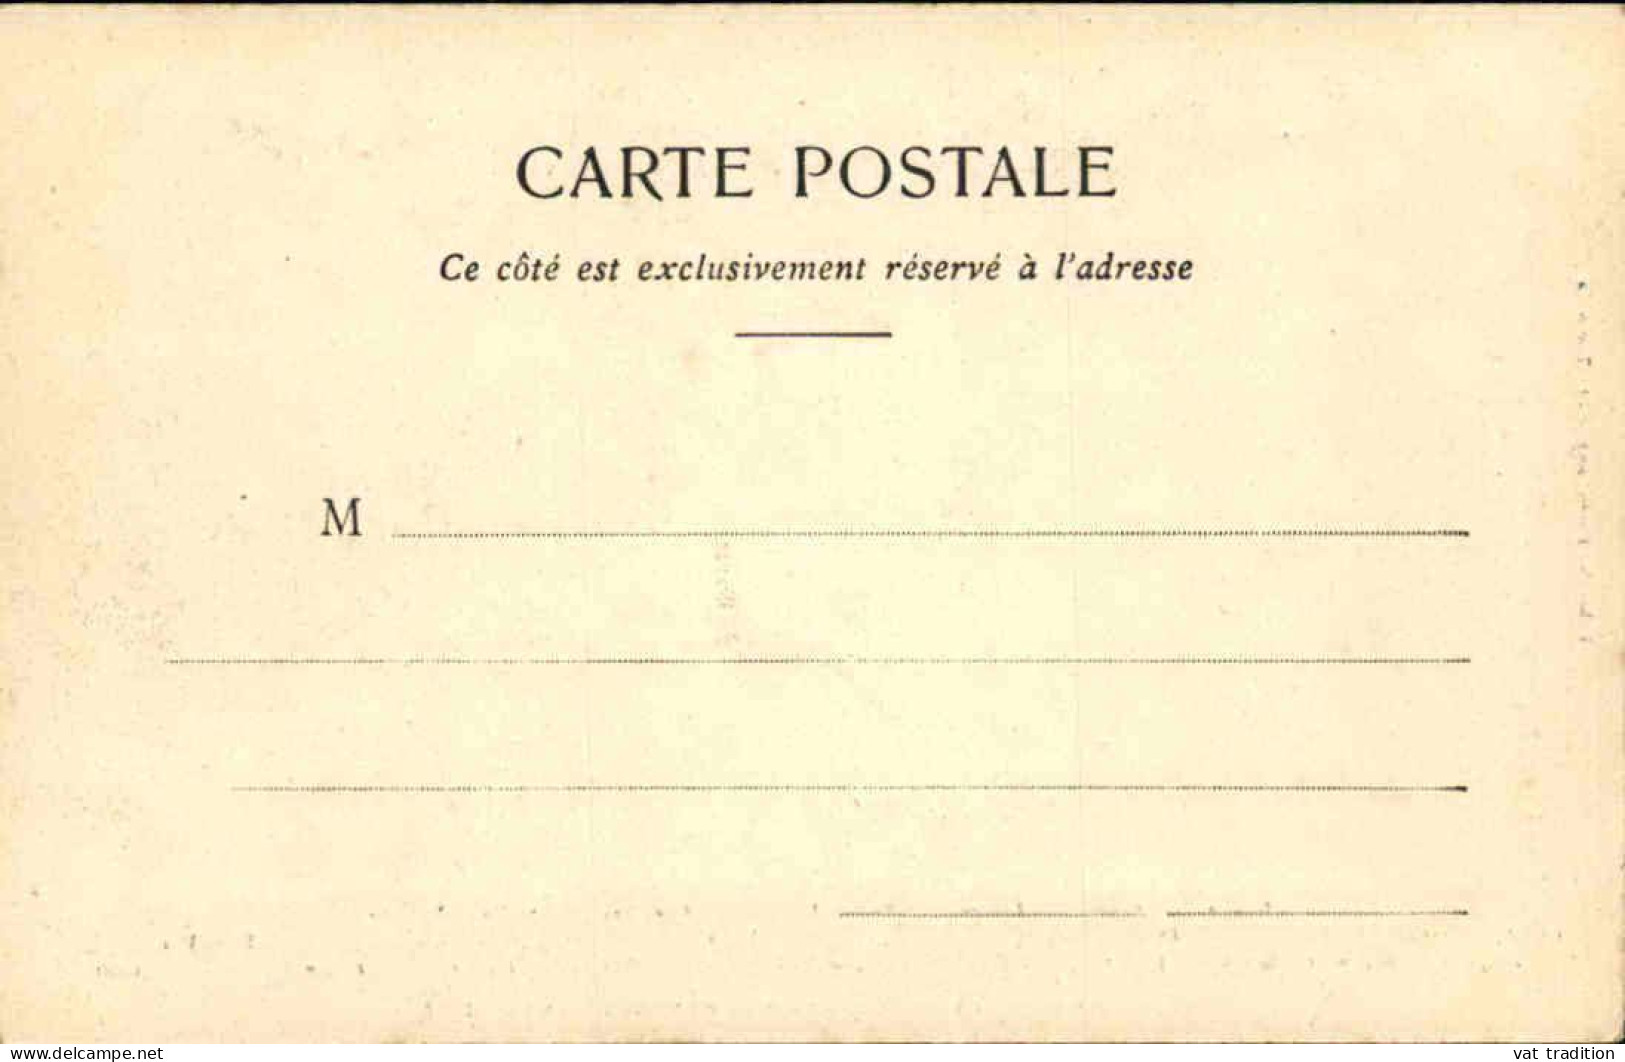 MILITARIA - Carte Postale Des Officiers Étrangers Aux Manœuvres En 1902 - L 152345 - Maniobras